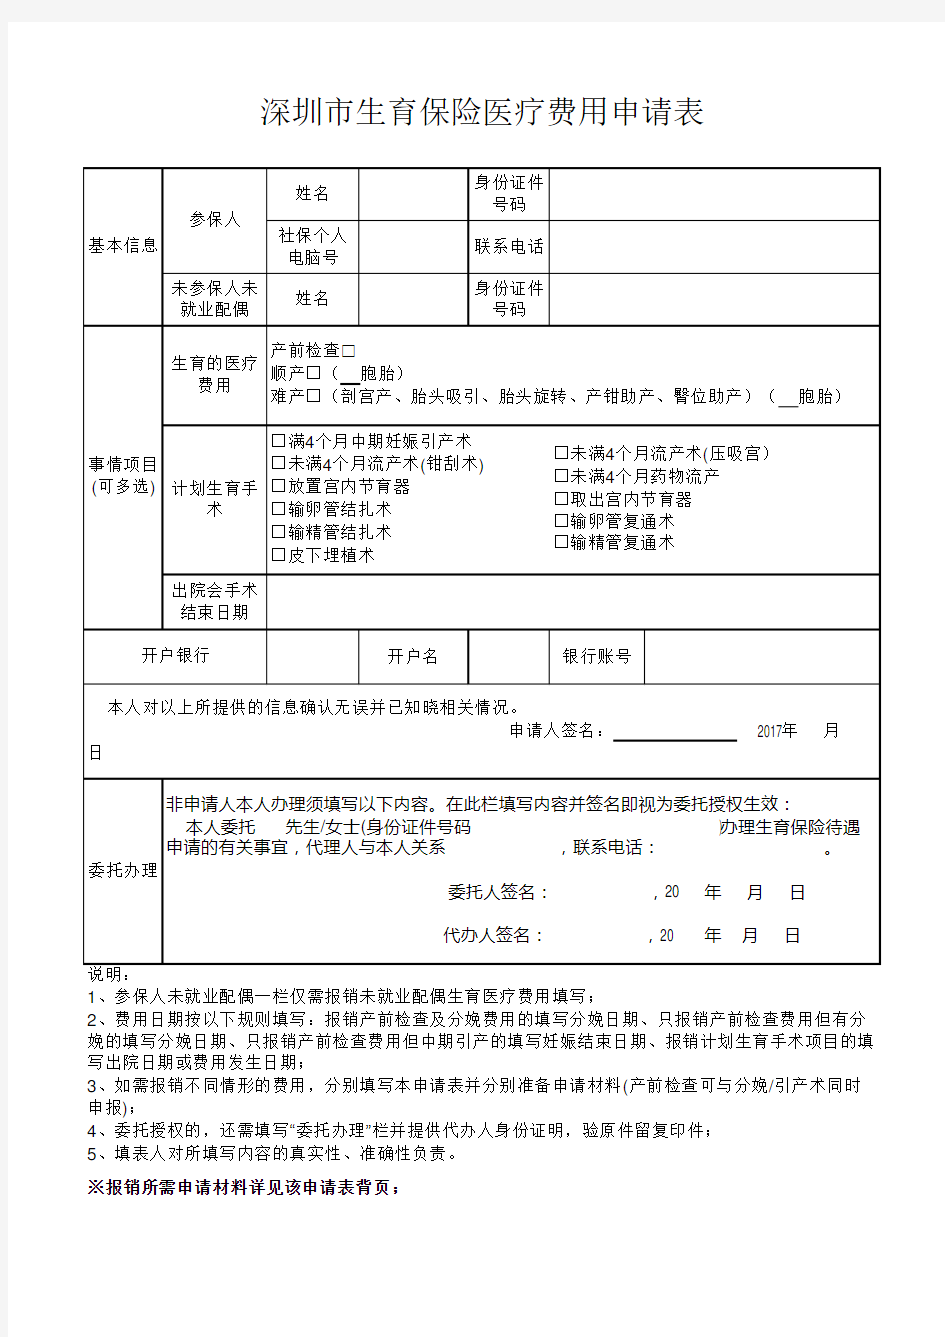 深圳市生育保险医疗费用申请表2017